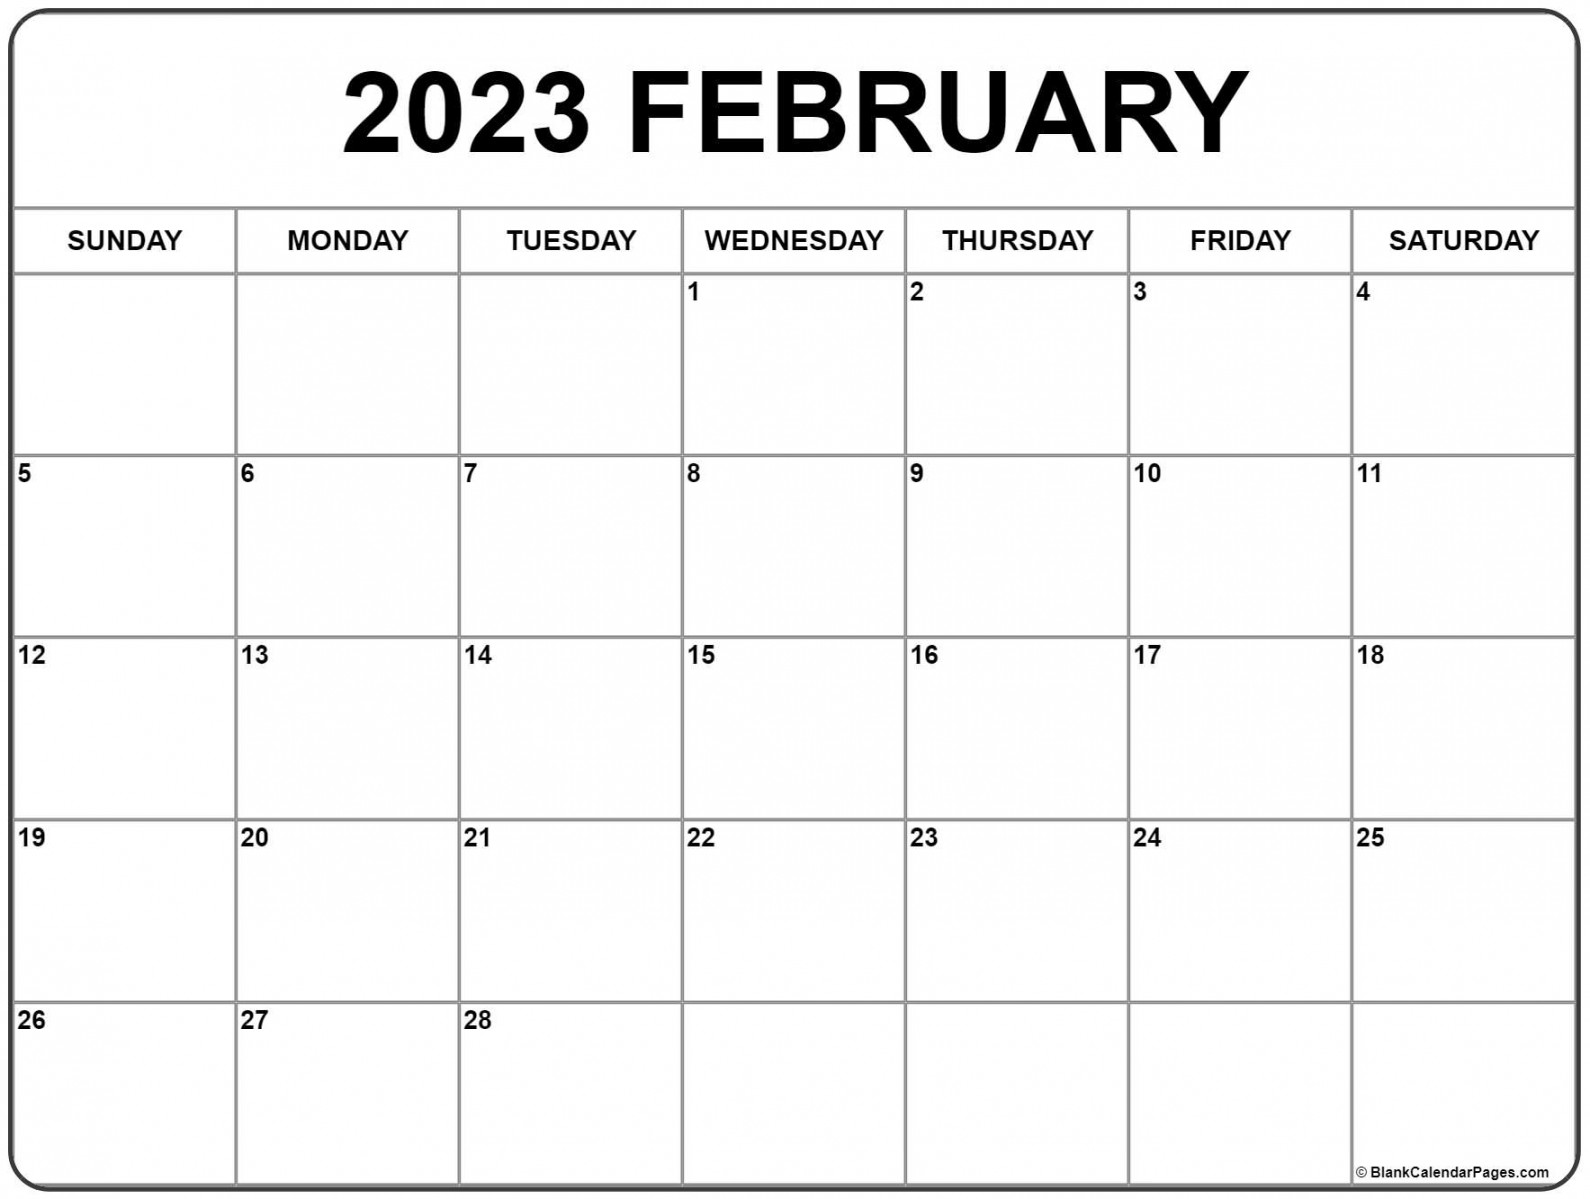 February calendar free printable calendar